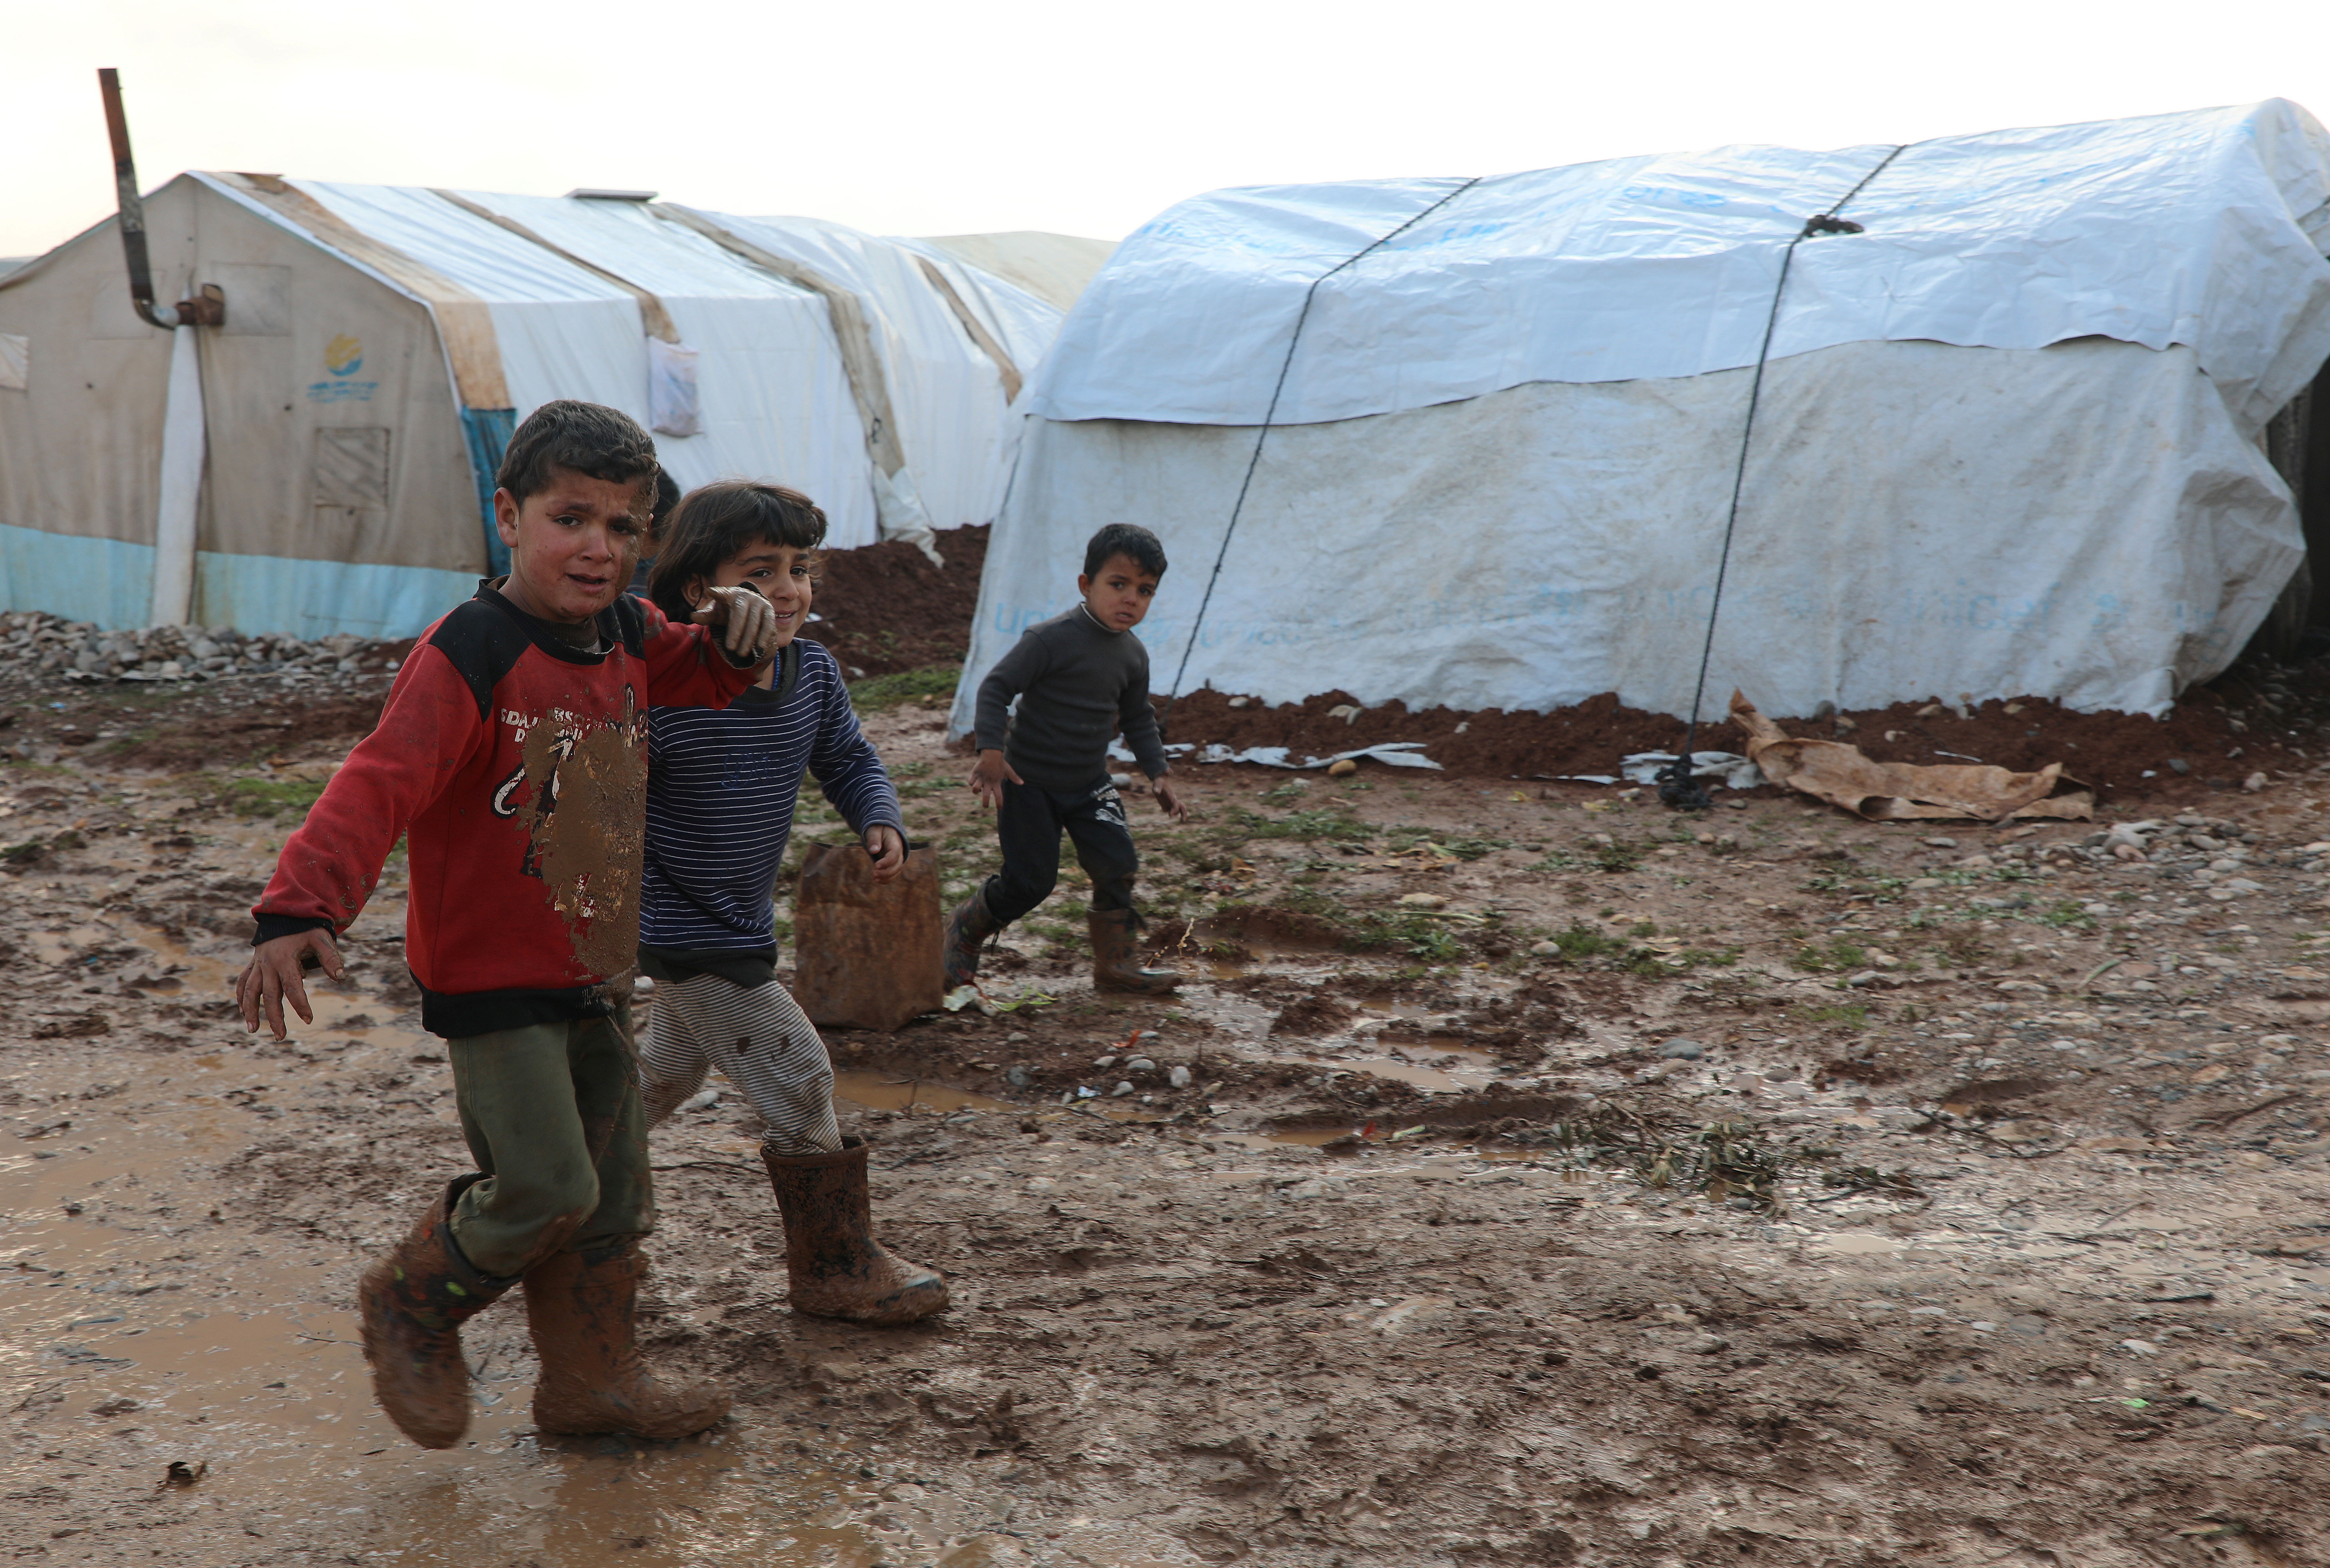 Niños sirios desplazados internos caminan en el barro cerca de las tiendas de campaña, en el campo del norte de Alepo, Siria, 20 de enero de 2021. Fotografía tomada el 20 de enero de 2021. REUTERS / Mahmoud Hassano